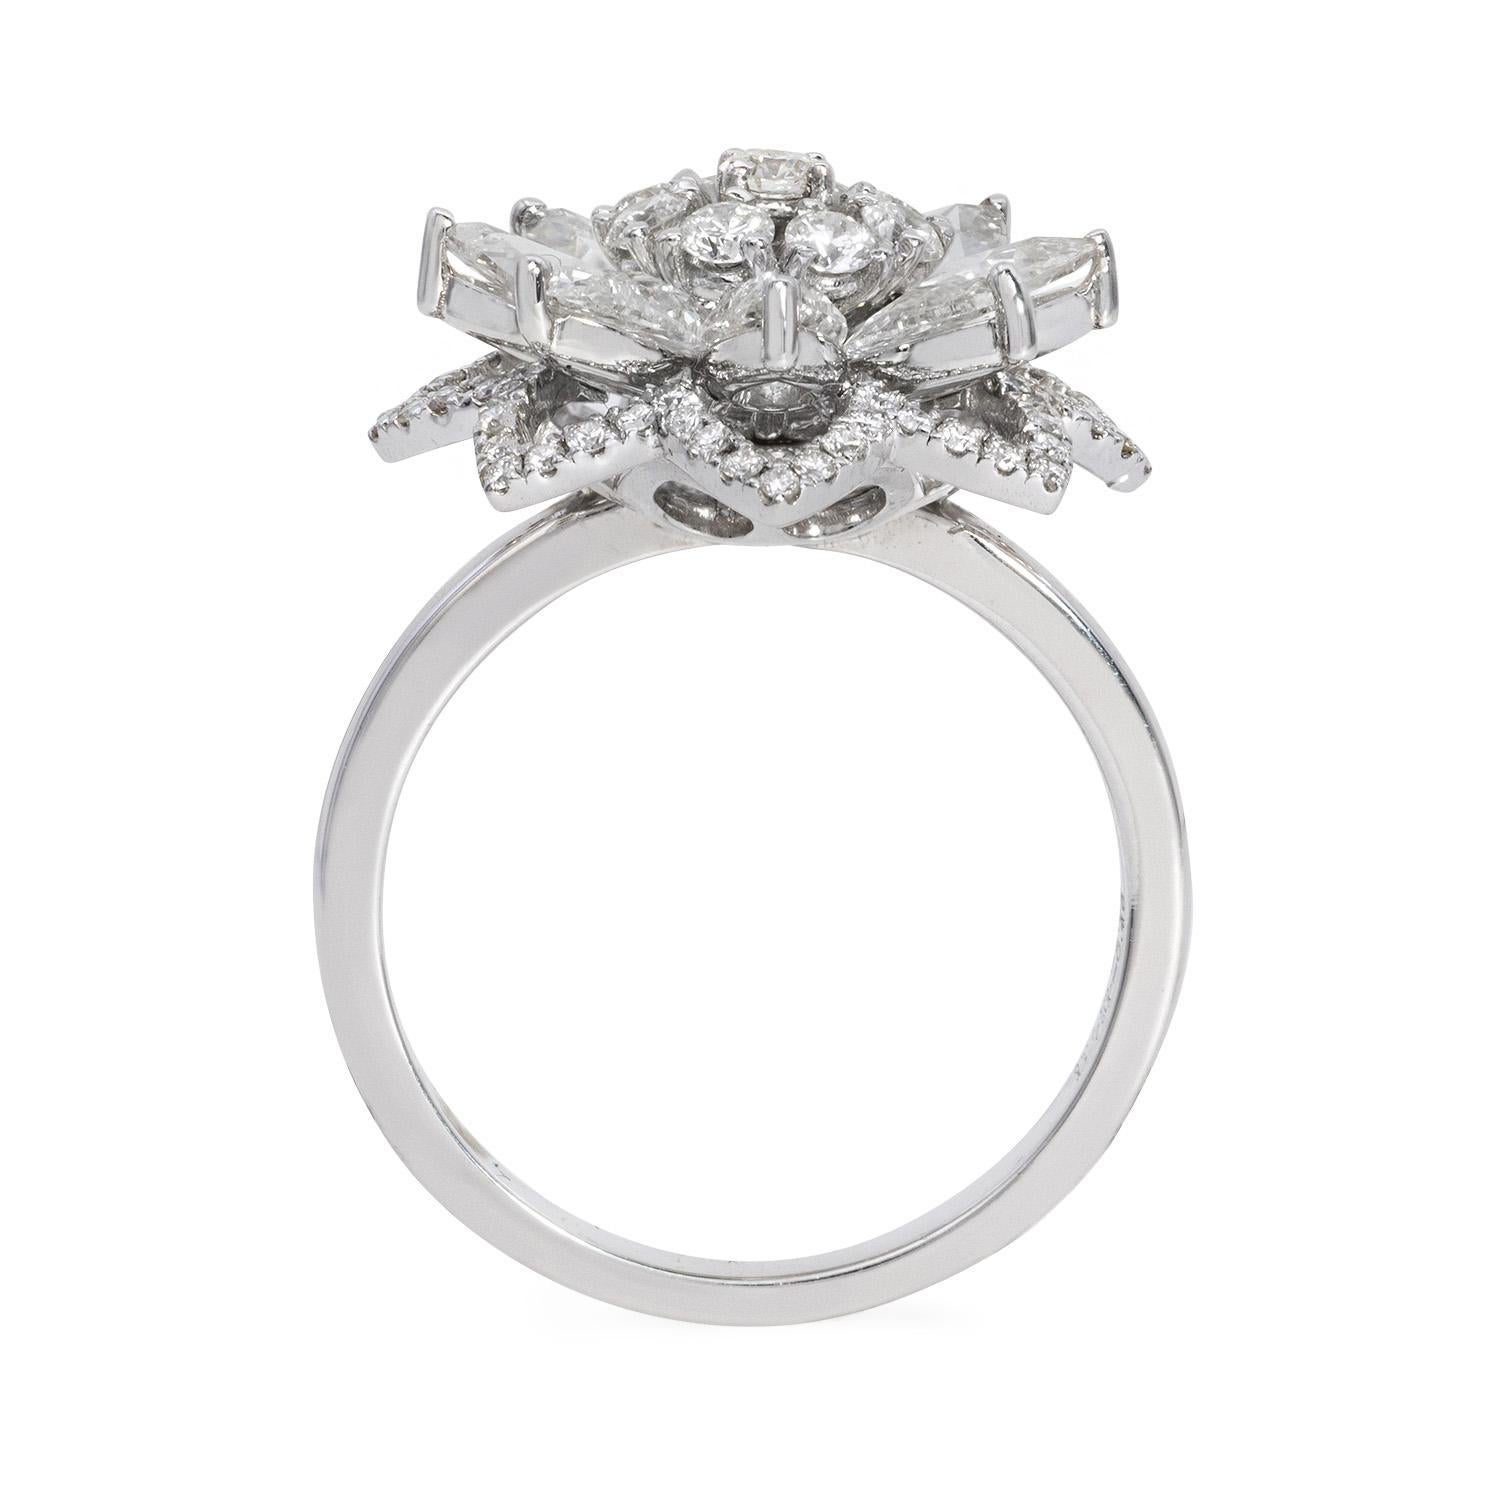 Der Lilotus Ring ist ein atemberaubendes und fesselndes Schmuckstück, das den Glanz von Diamanten mit der Eleganz von 18 Karat Weißgold verbindet. Dieser Ring besticht durch eine Reihe von Diamanten, darunter runde Brillanten und Diamanten im